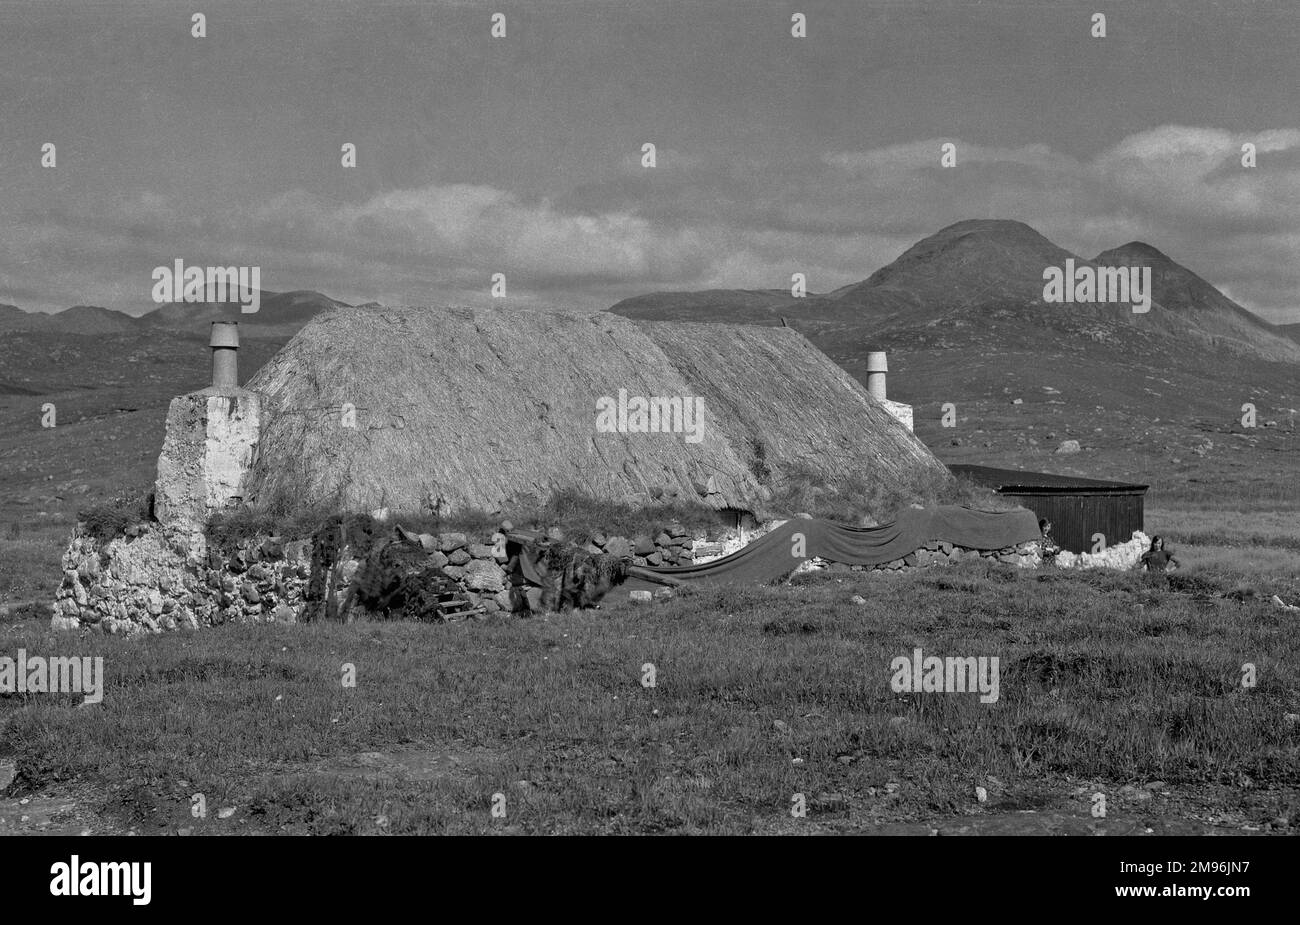 Cottages in a bleak Scottish landscape. Stock Photo